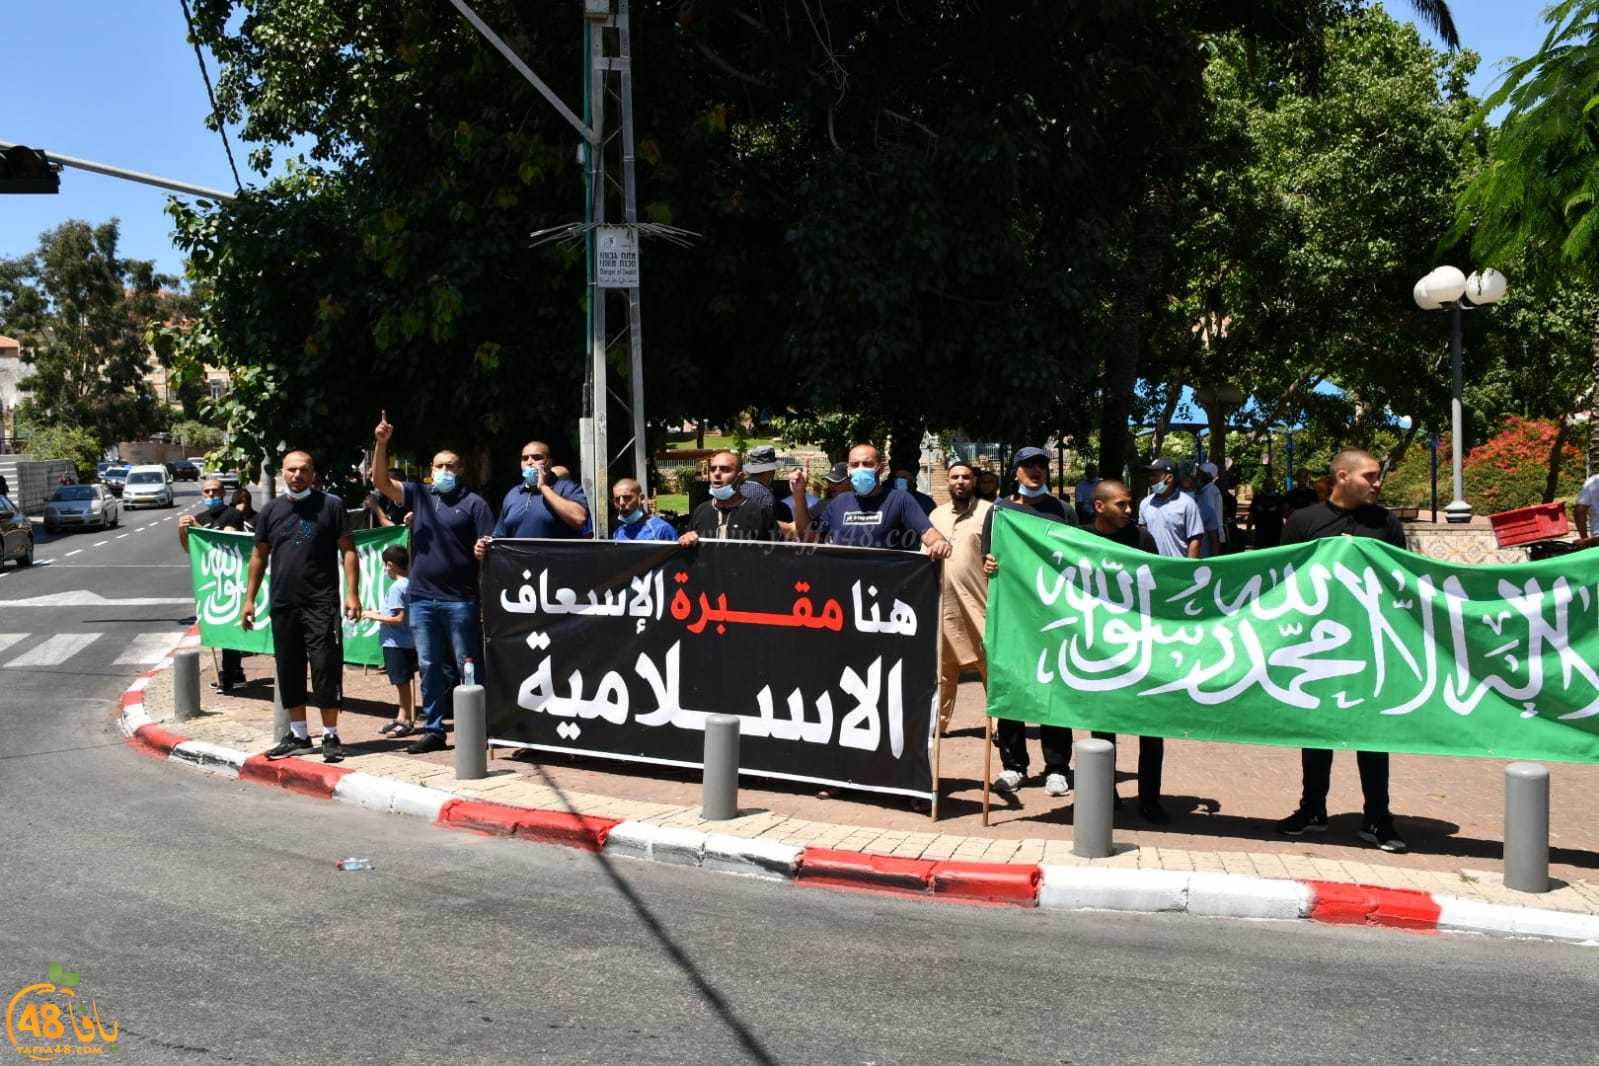  فيديو: وقفة احتجاجية في حديقة الغزازوة رفضاً لنبش مقبرة الاسعاف بيافا